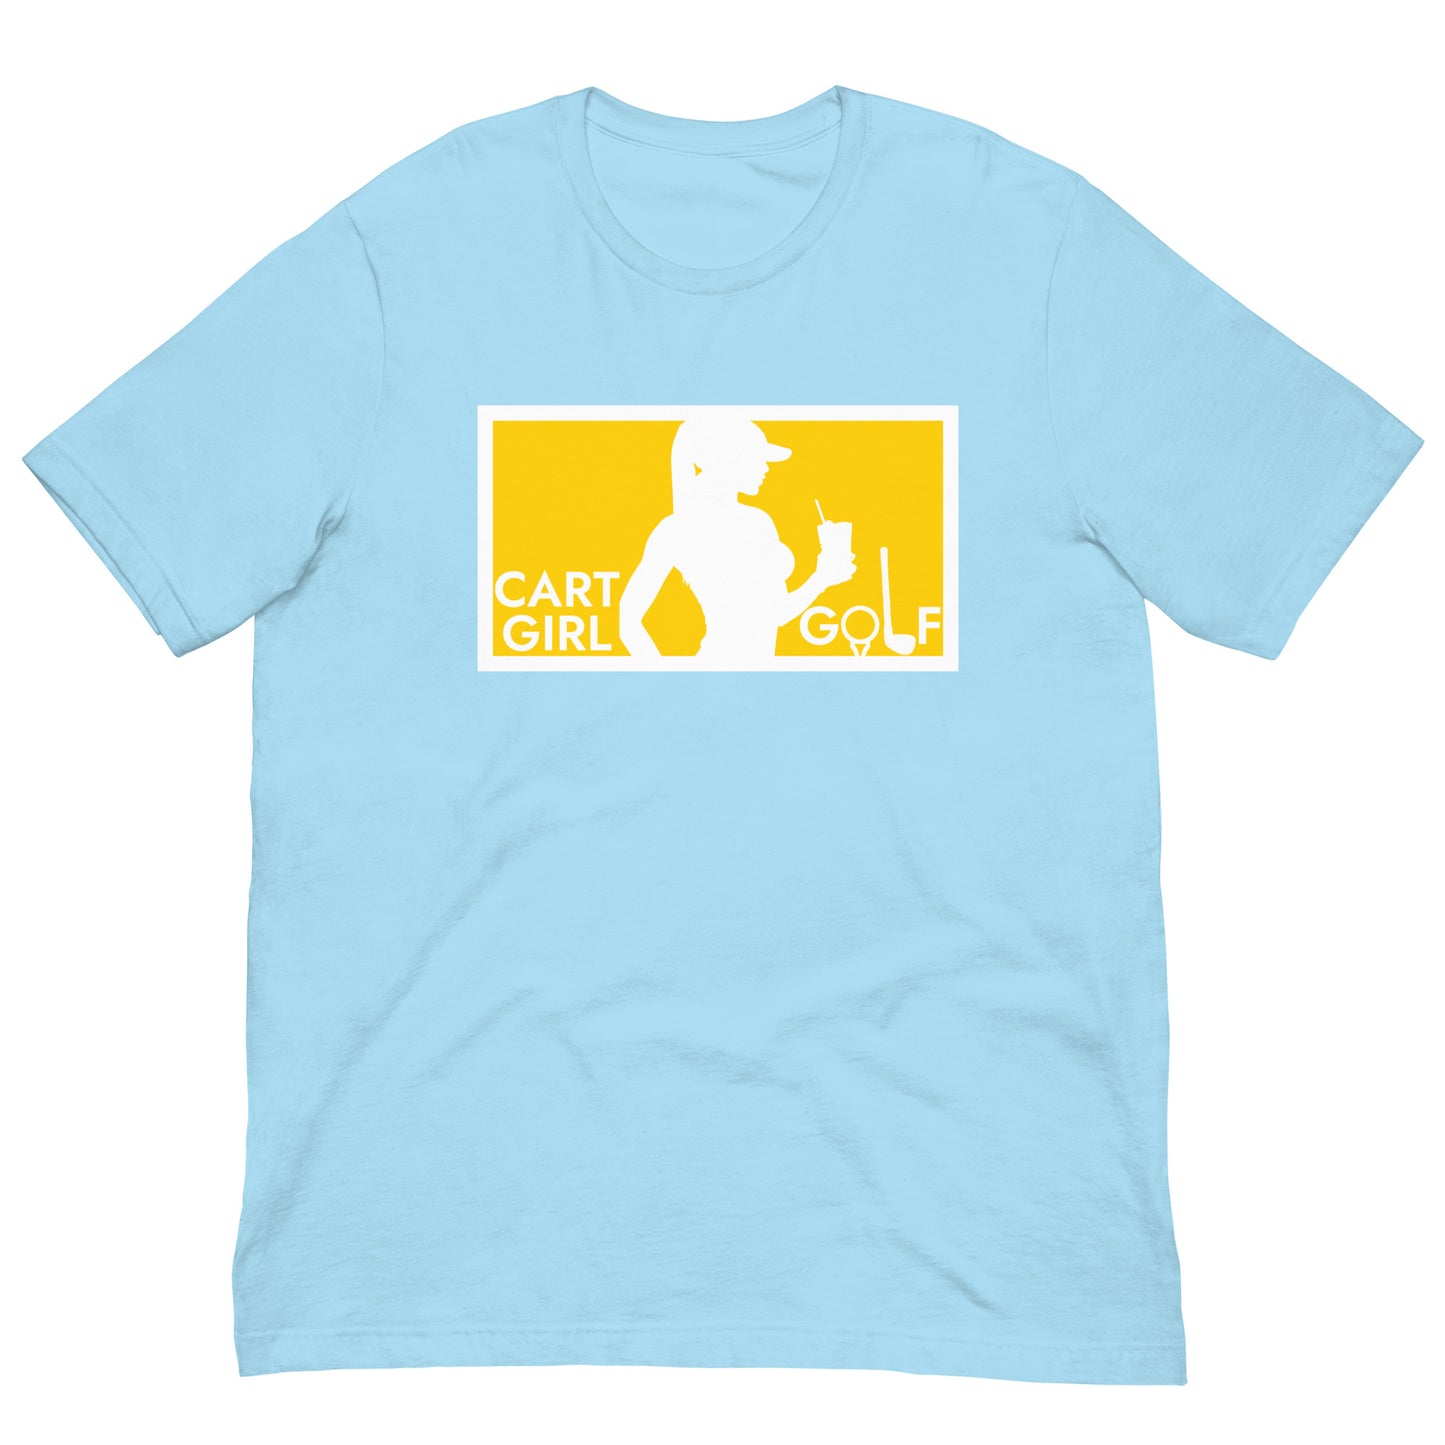 "Cart Girl Golf" T-shirt (Regular Fit/Soft)